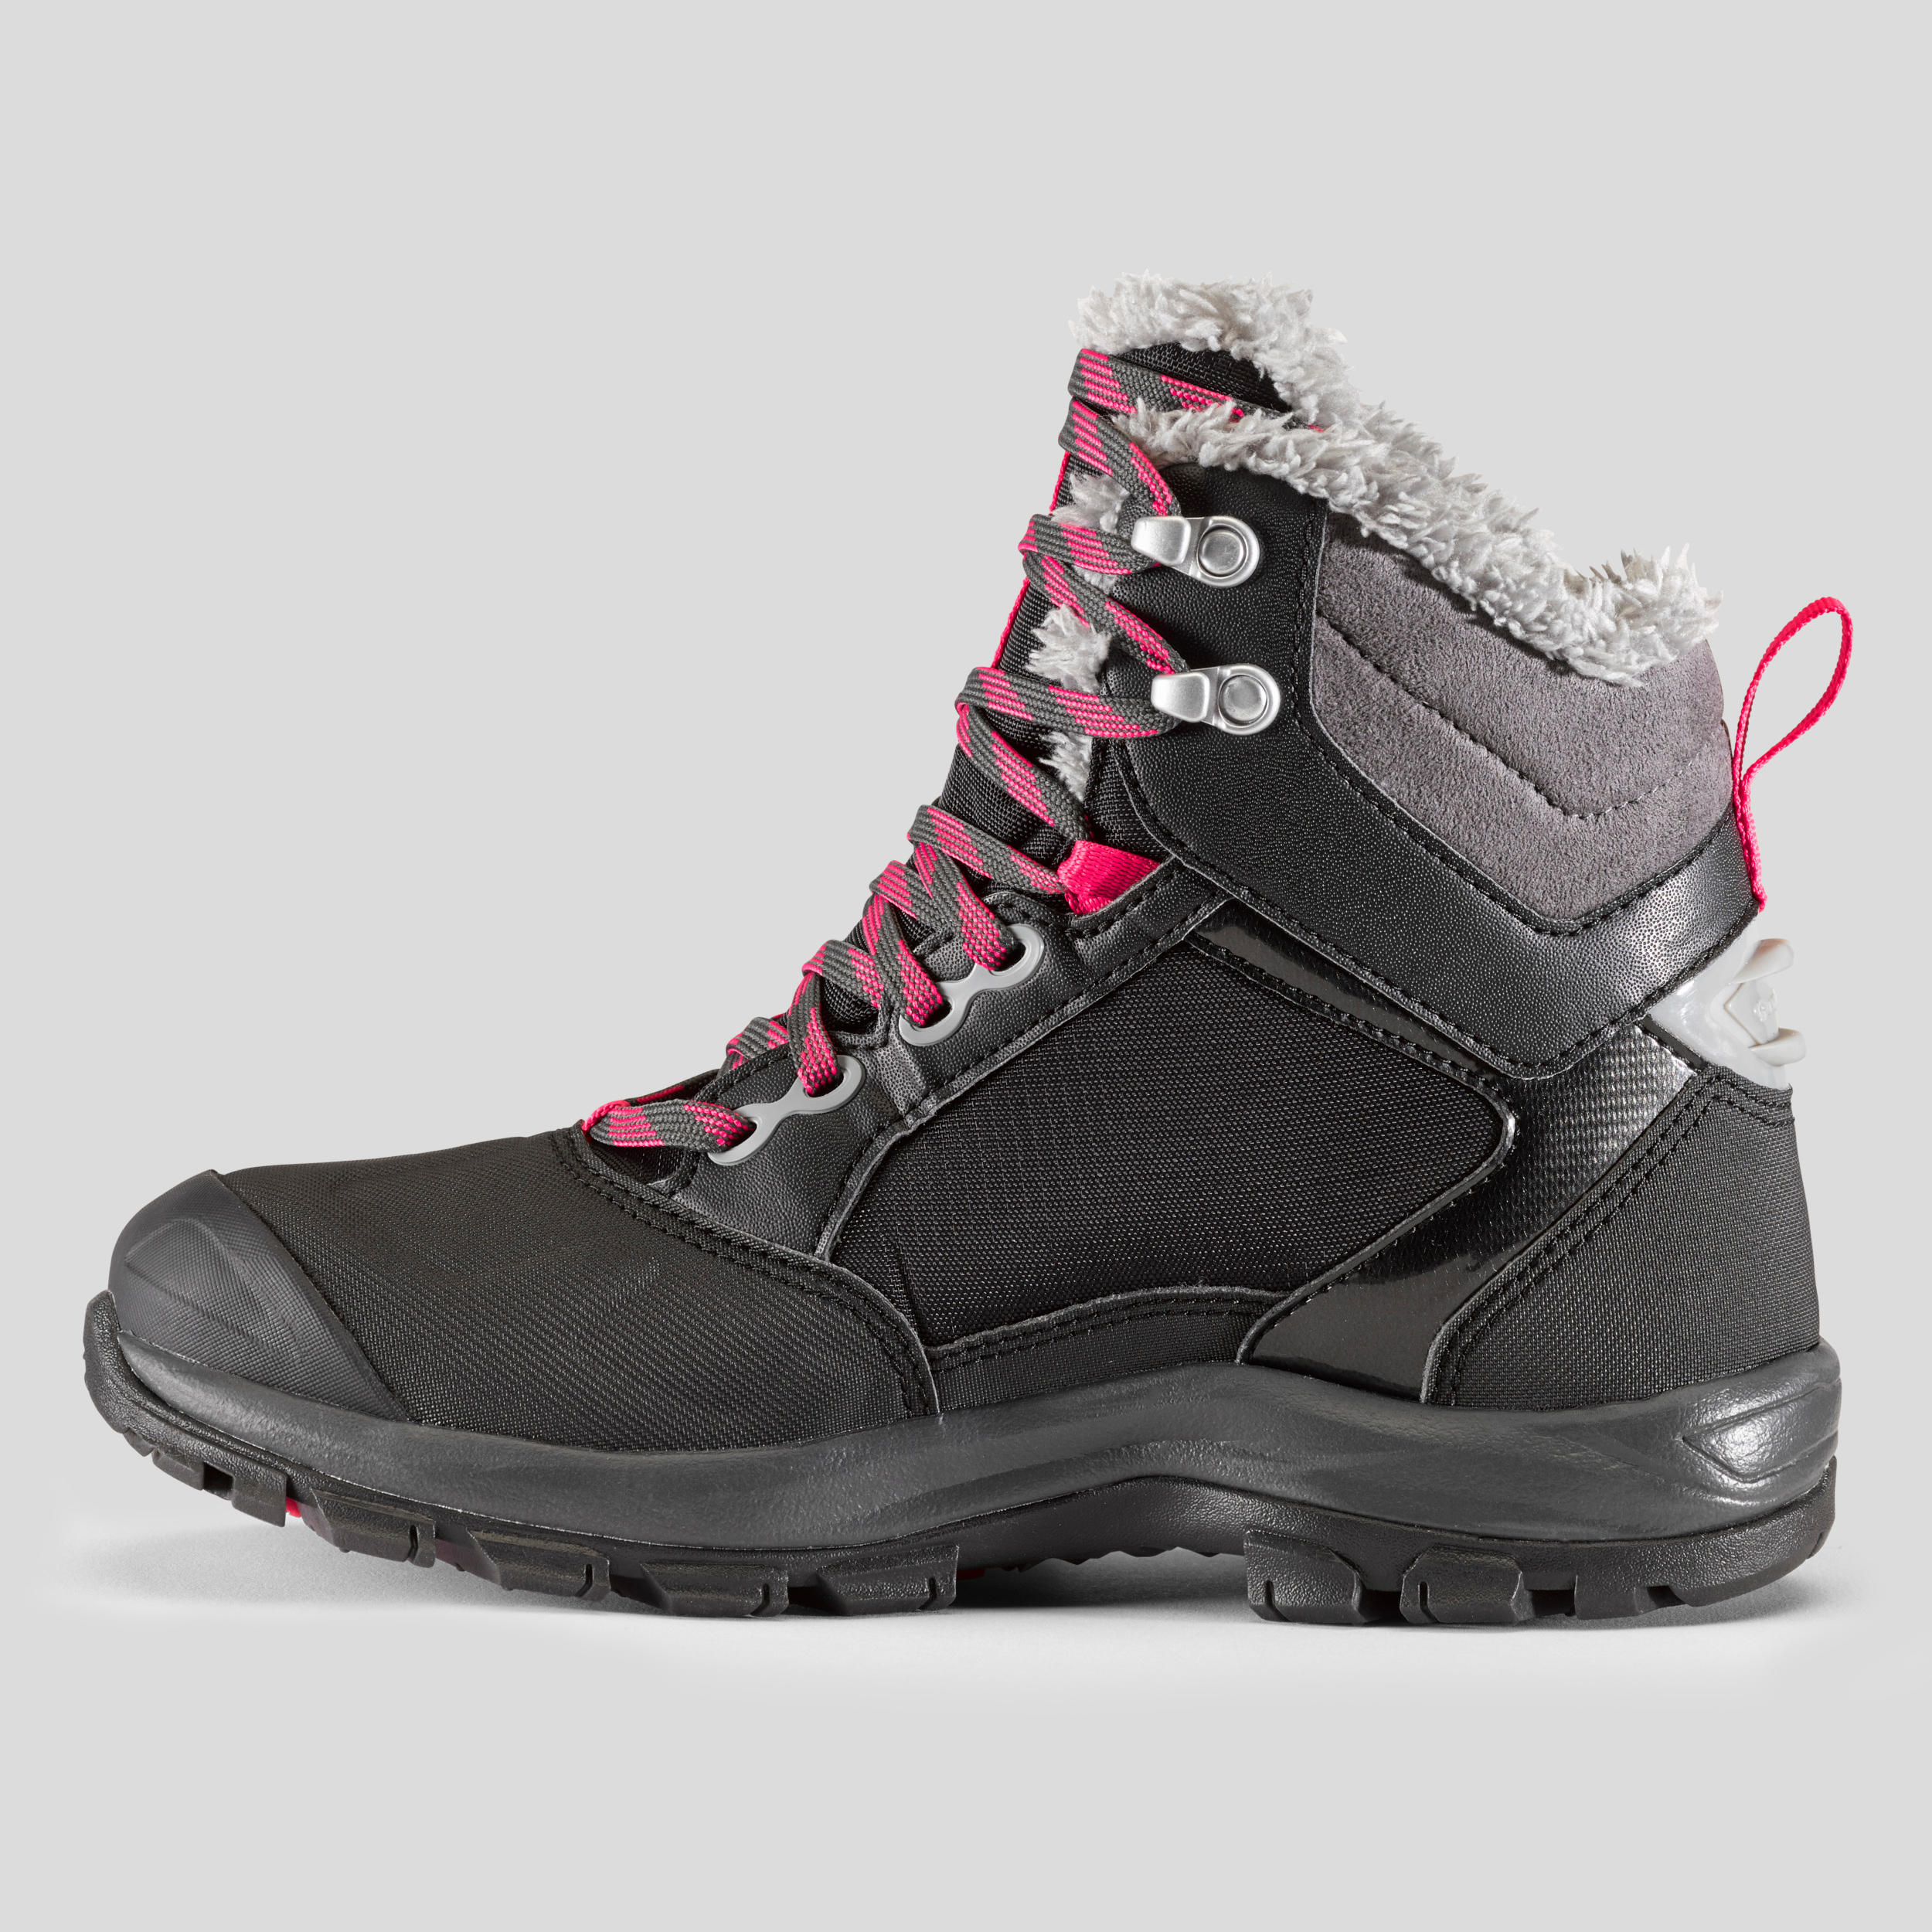 Bottes de randonnée d'hiver femmes – SH 520 X-Warm noir - QUECHUA